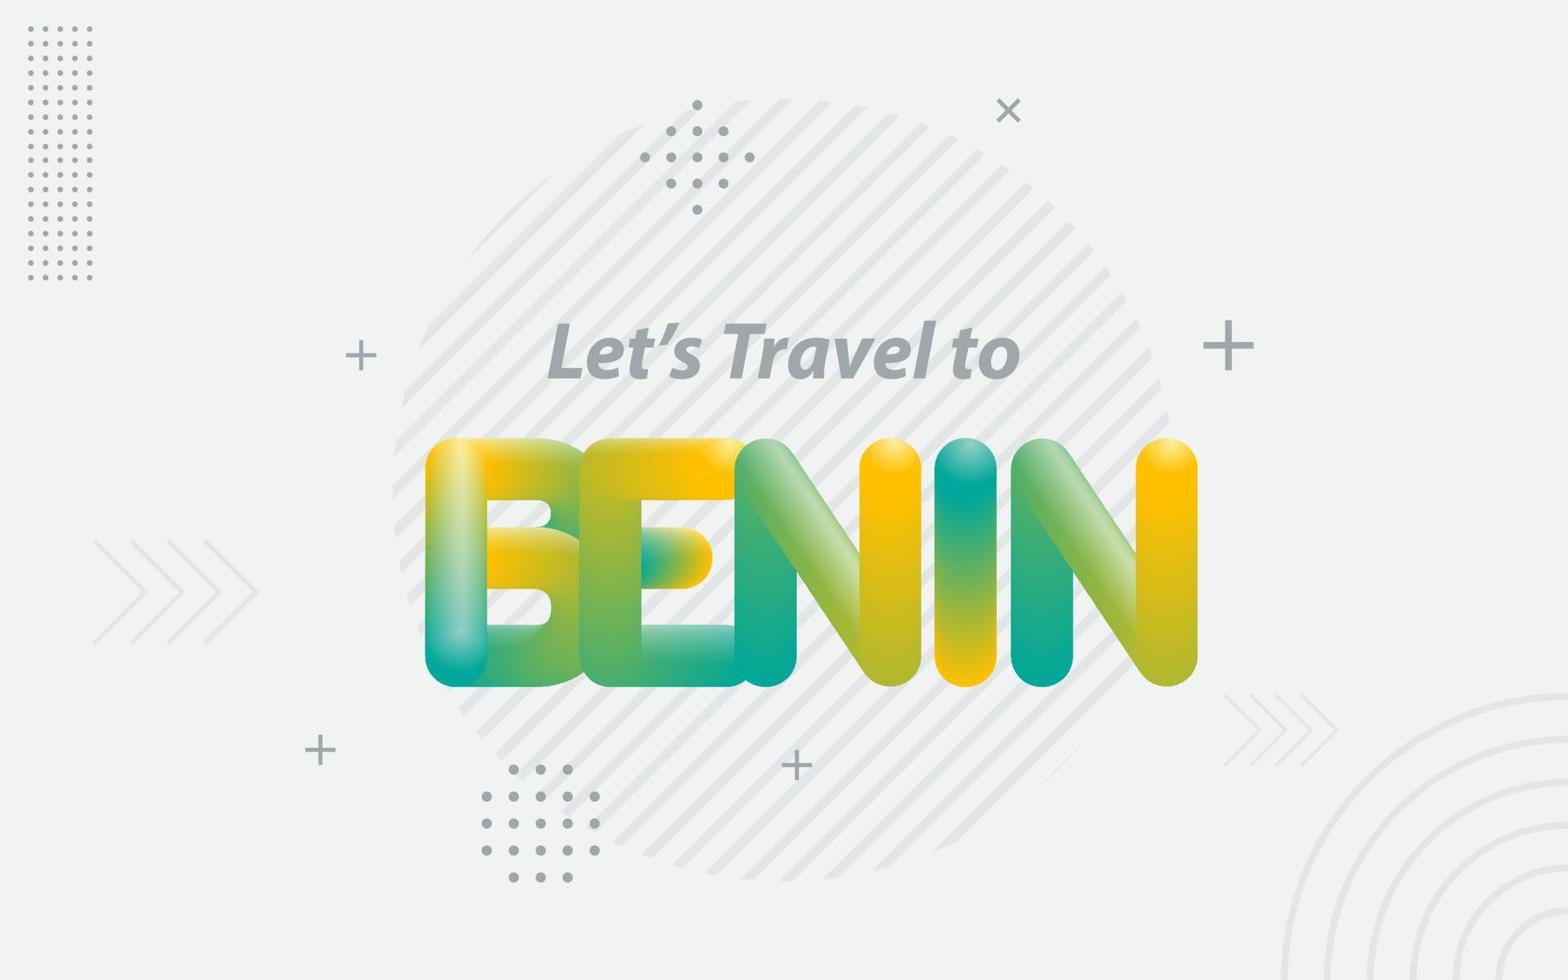 viajemos a benin. tipografía creativa con efecto de mezcla 3d vector